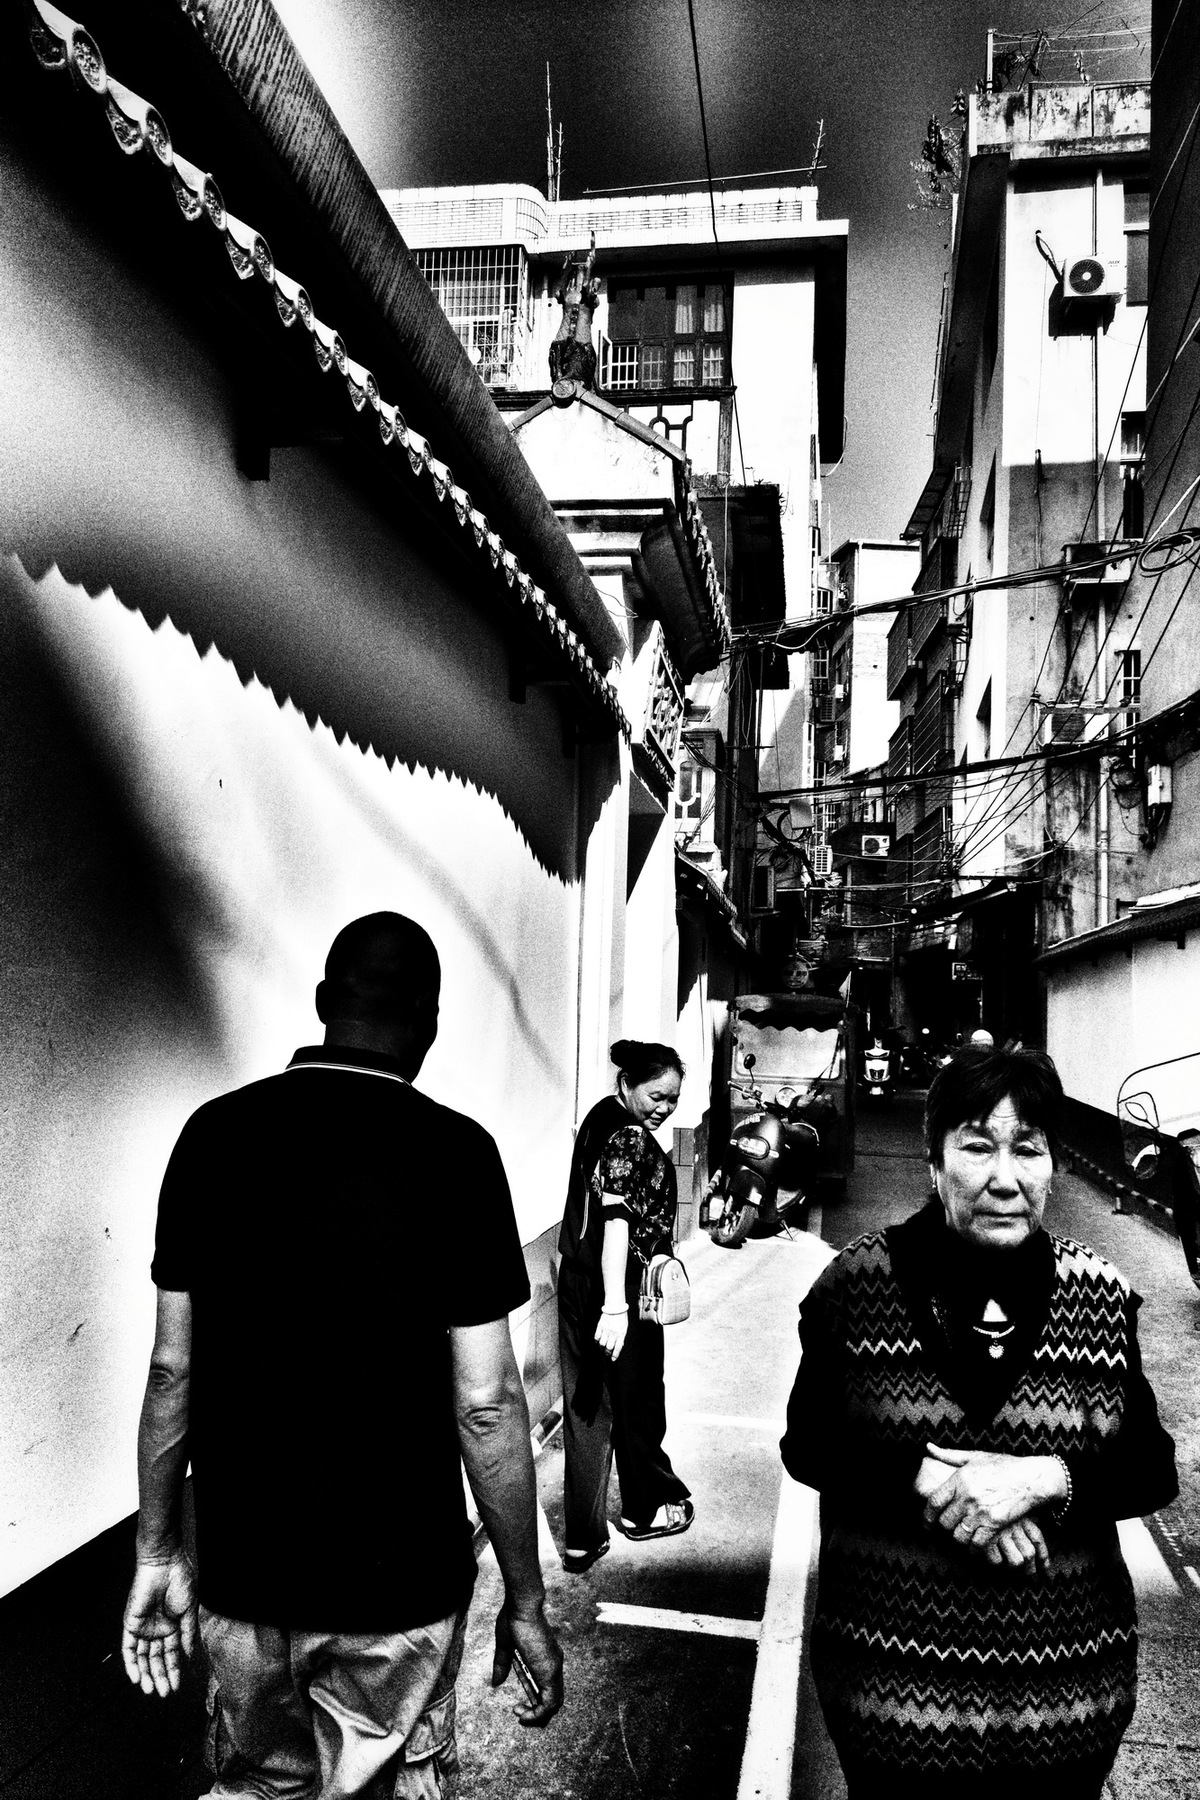 一条狭窄的街道上行走的人们黑白照片